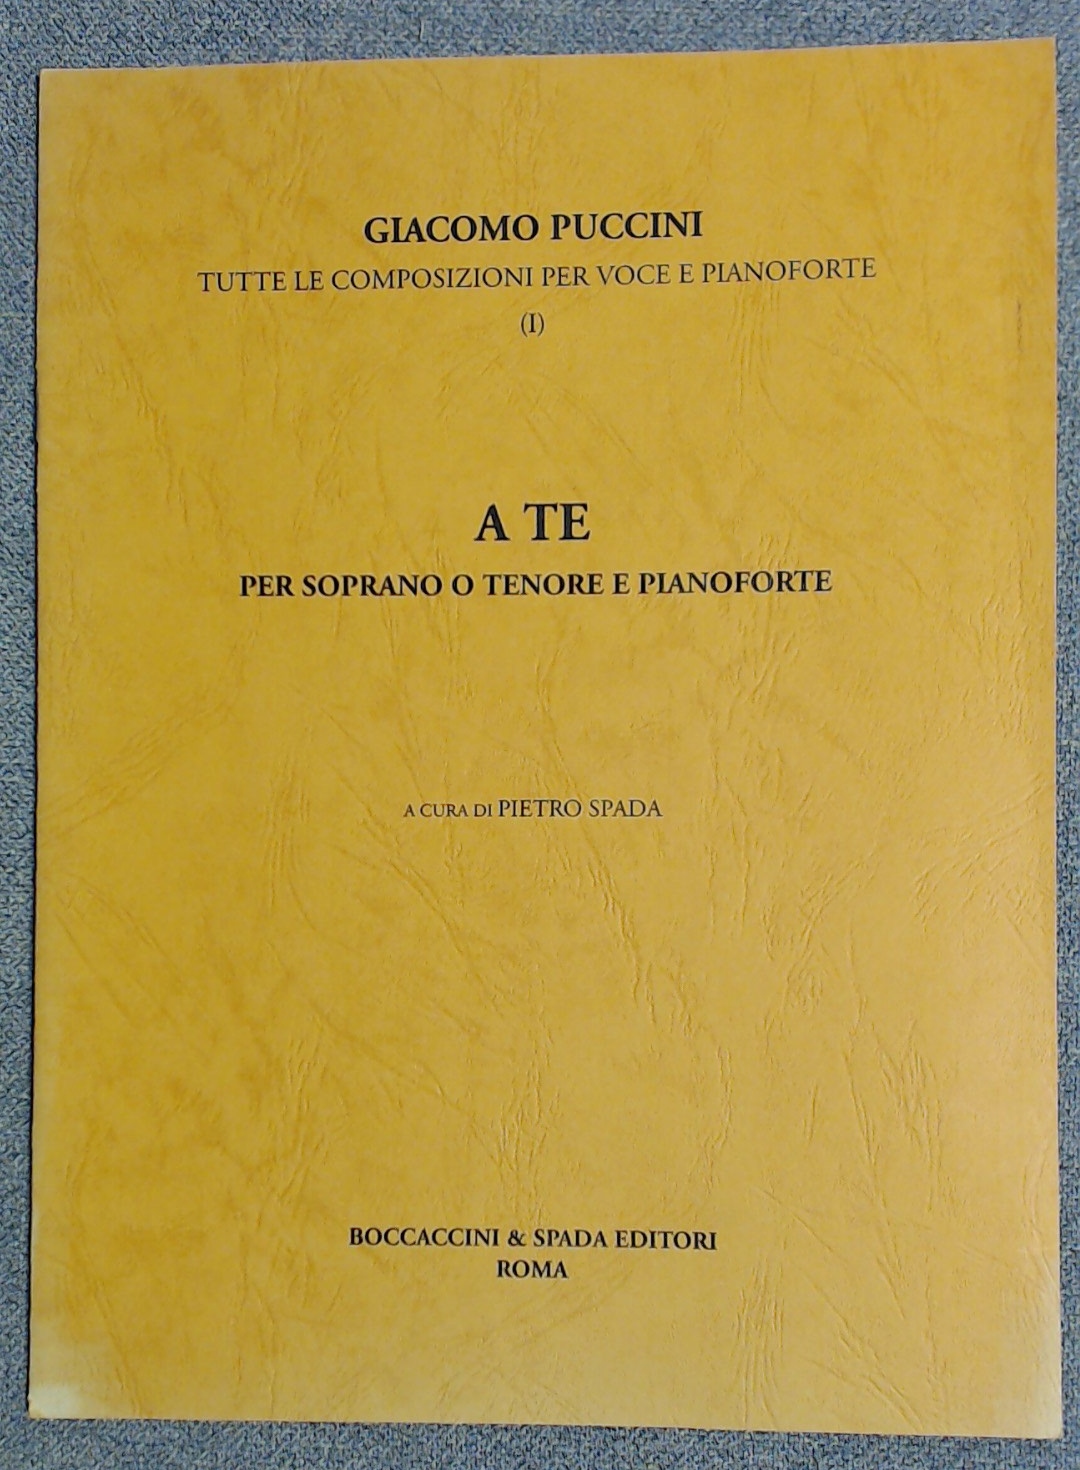 Giacomo Puccini A Te "To You" Soprano or Tenor. Pietro Spada - Click Image to Close